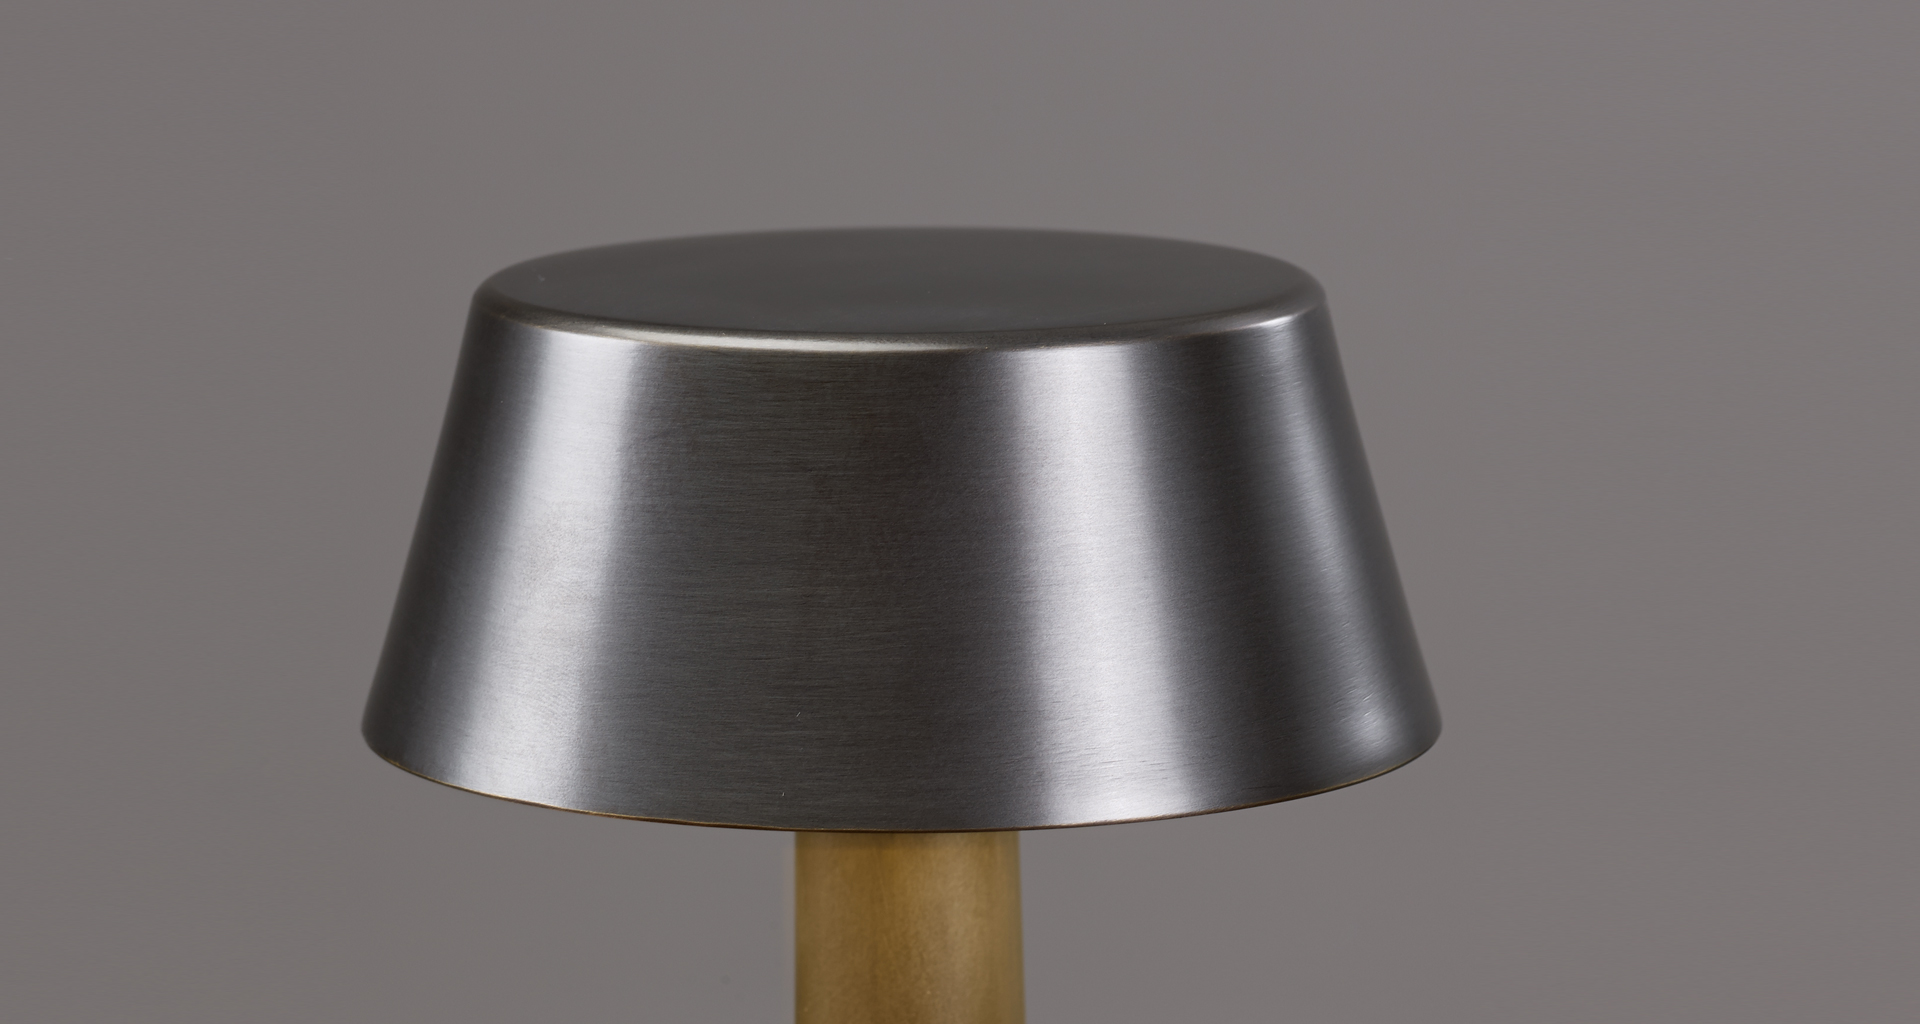 Dettaglio di Fiammetta, lampada da tavolo a LED portatile con struttura in bronzo e accensione al tocco, del catalogo di Promemoria | Promemoria